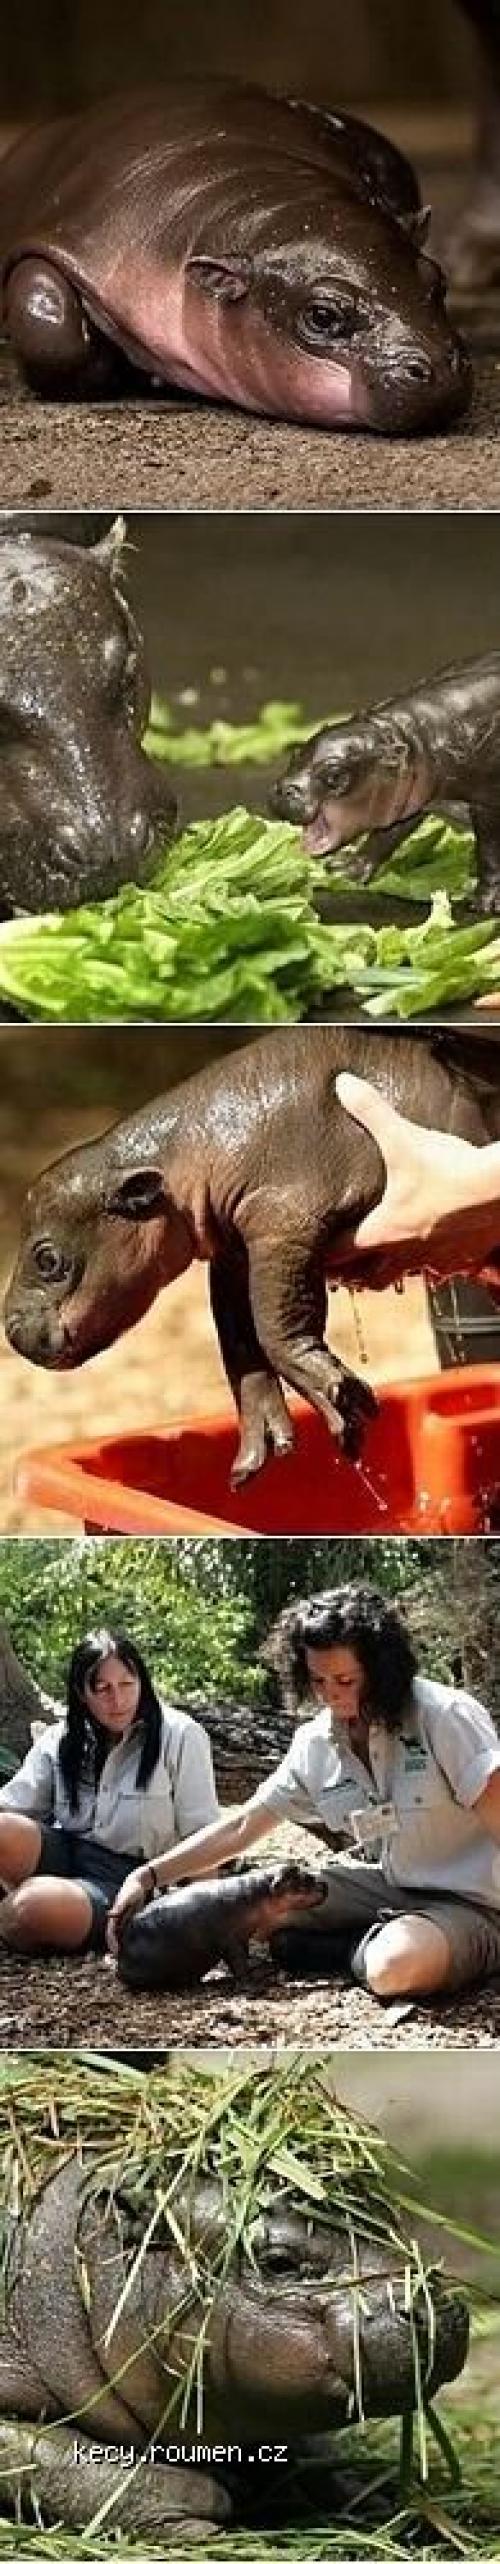  Cute Baby Pygmy Hippo 